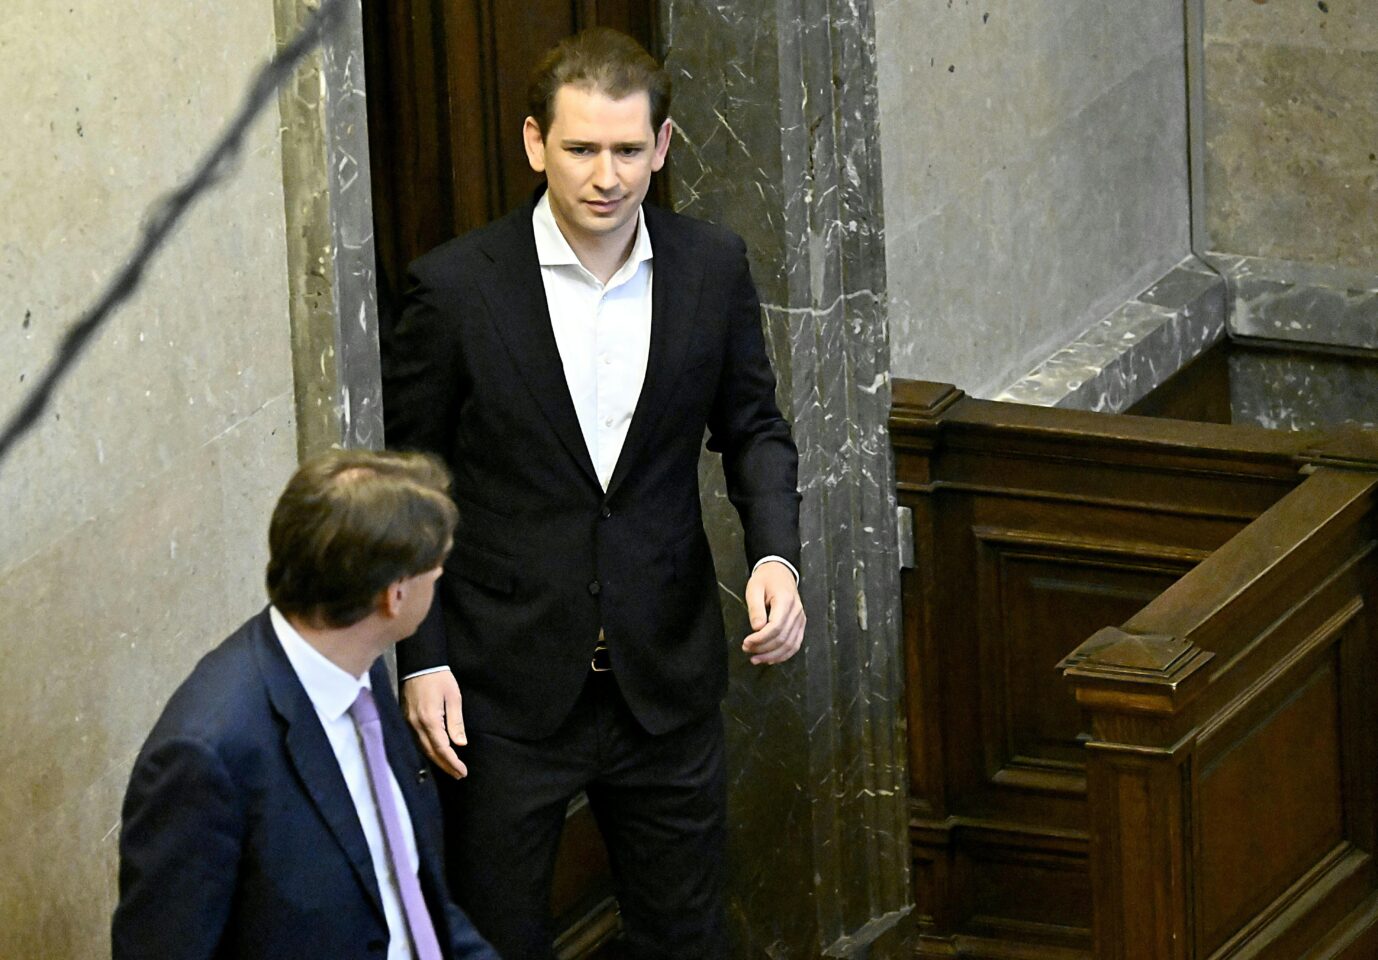 Österreichs Ex-Kanzler Sebastian Kurz betritt den Gerichtssaal in Wien. Wird er verurteilt?